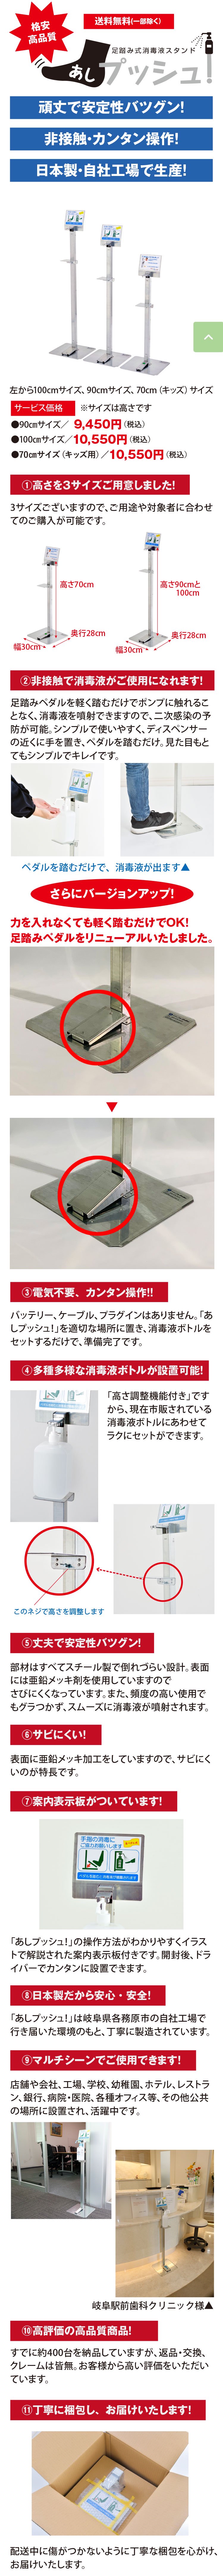 足踏み式消毒液スタンド「あしプッシュ！」100cmサイズは日本で生産し、低価格でご提供。スチール製で安定性バツグン。足でペダルを踏めば、ポンプ式消毒液ボトルから消毒液(アルコール)が噴射され、非接触で衛生的。高さ調節も可能で、市販の消毒液であればほとんどが設置可能。
